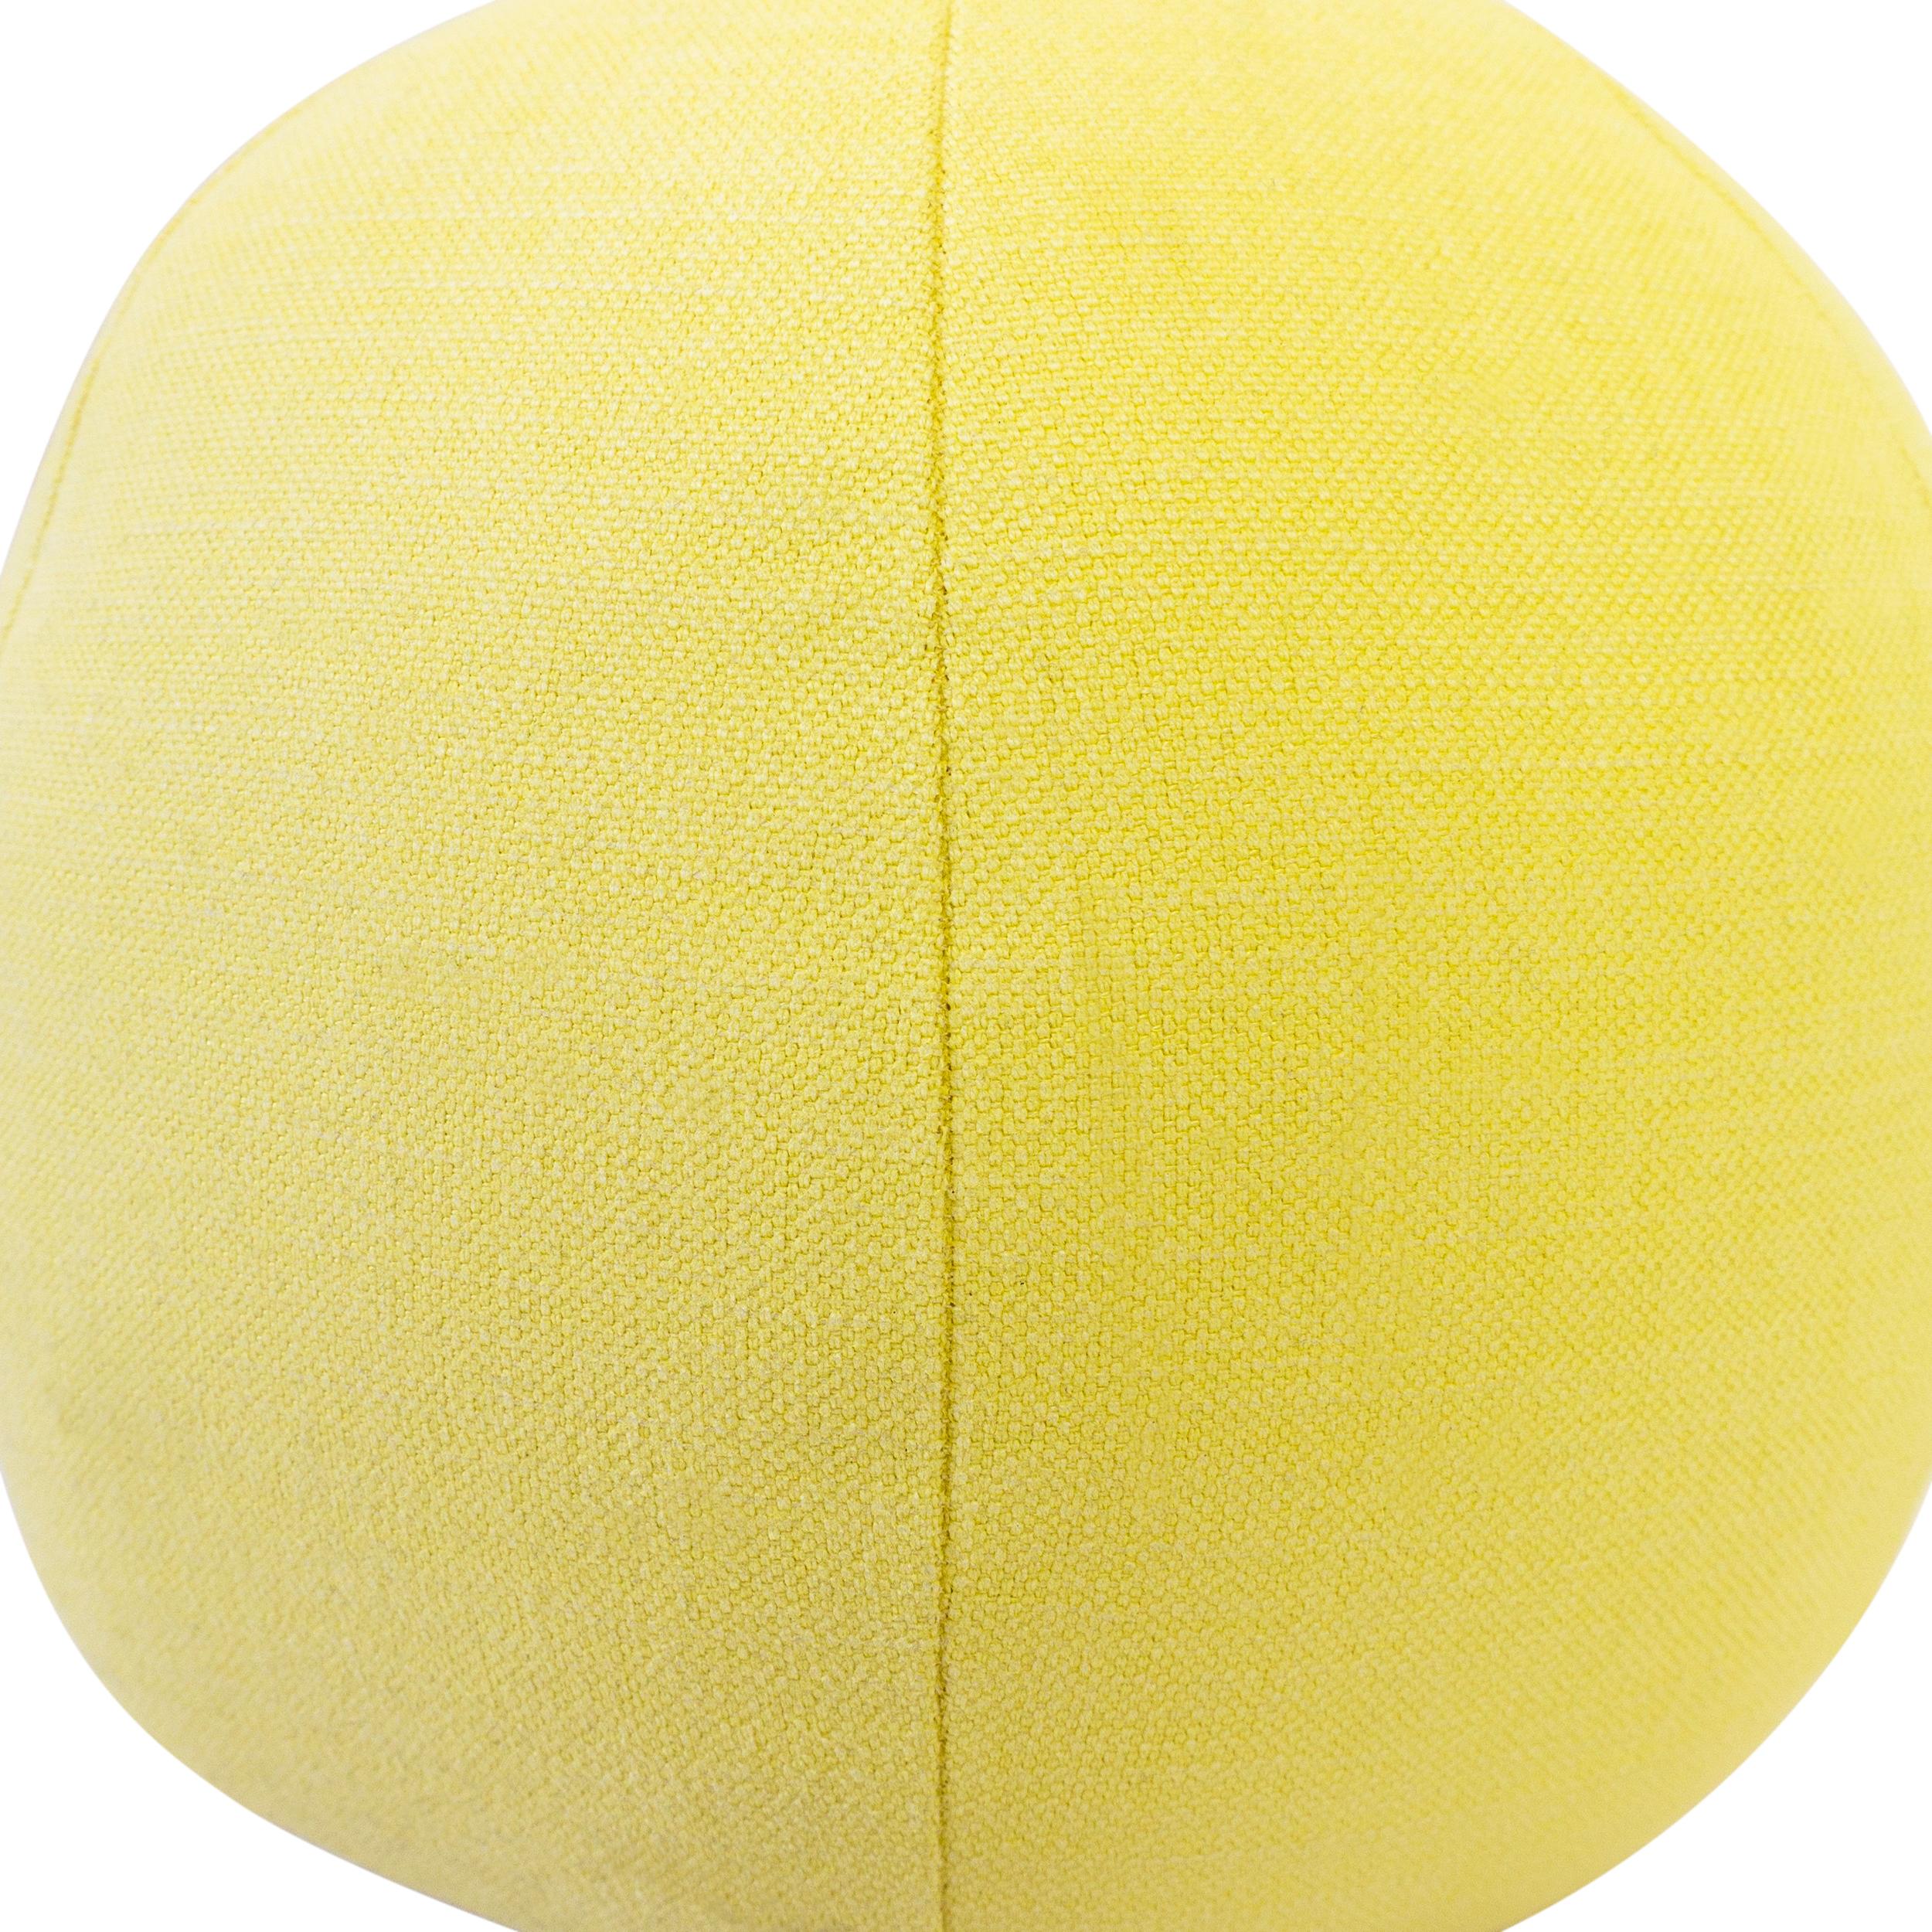 yellow ball pillow